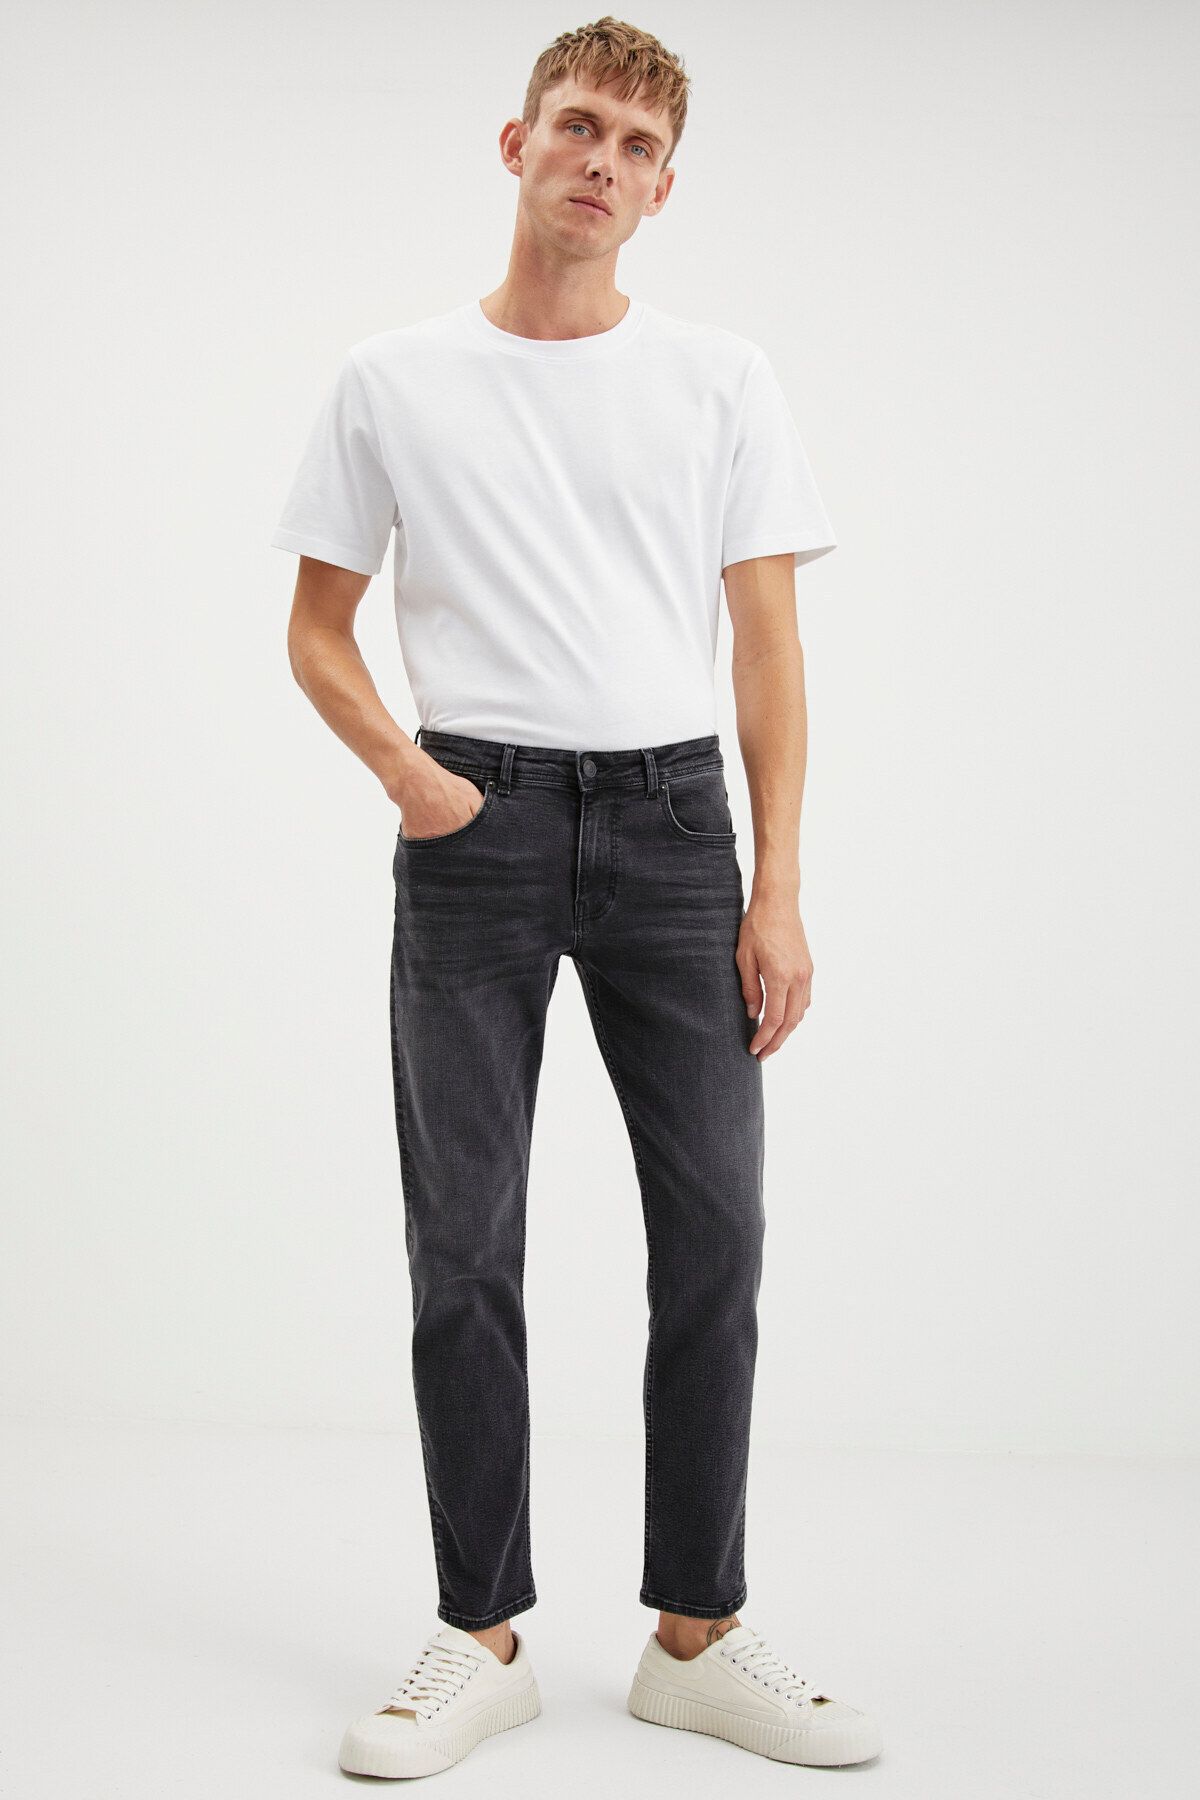 GRIMELANGE Davın Erkek Denim Kalın Dokulu Slim Fit Kalıplı Antrasit Jeans